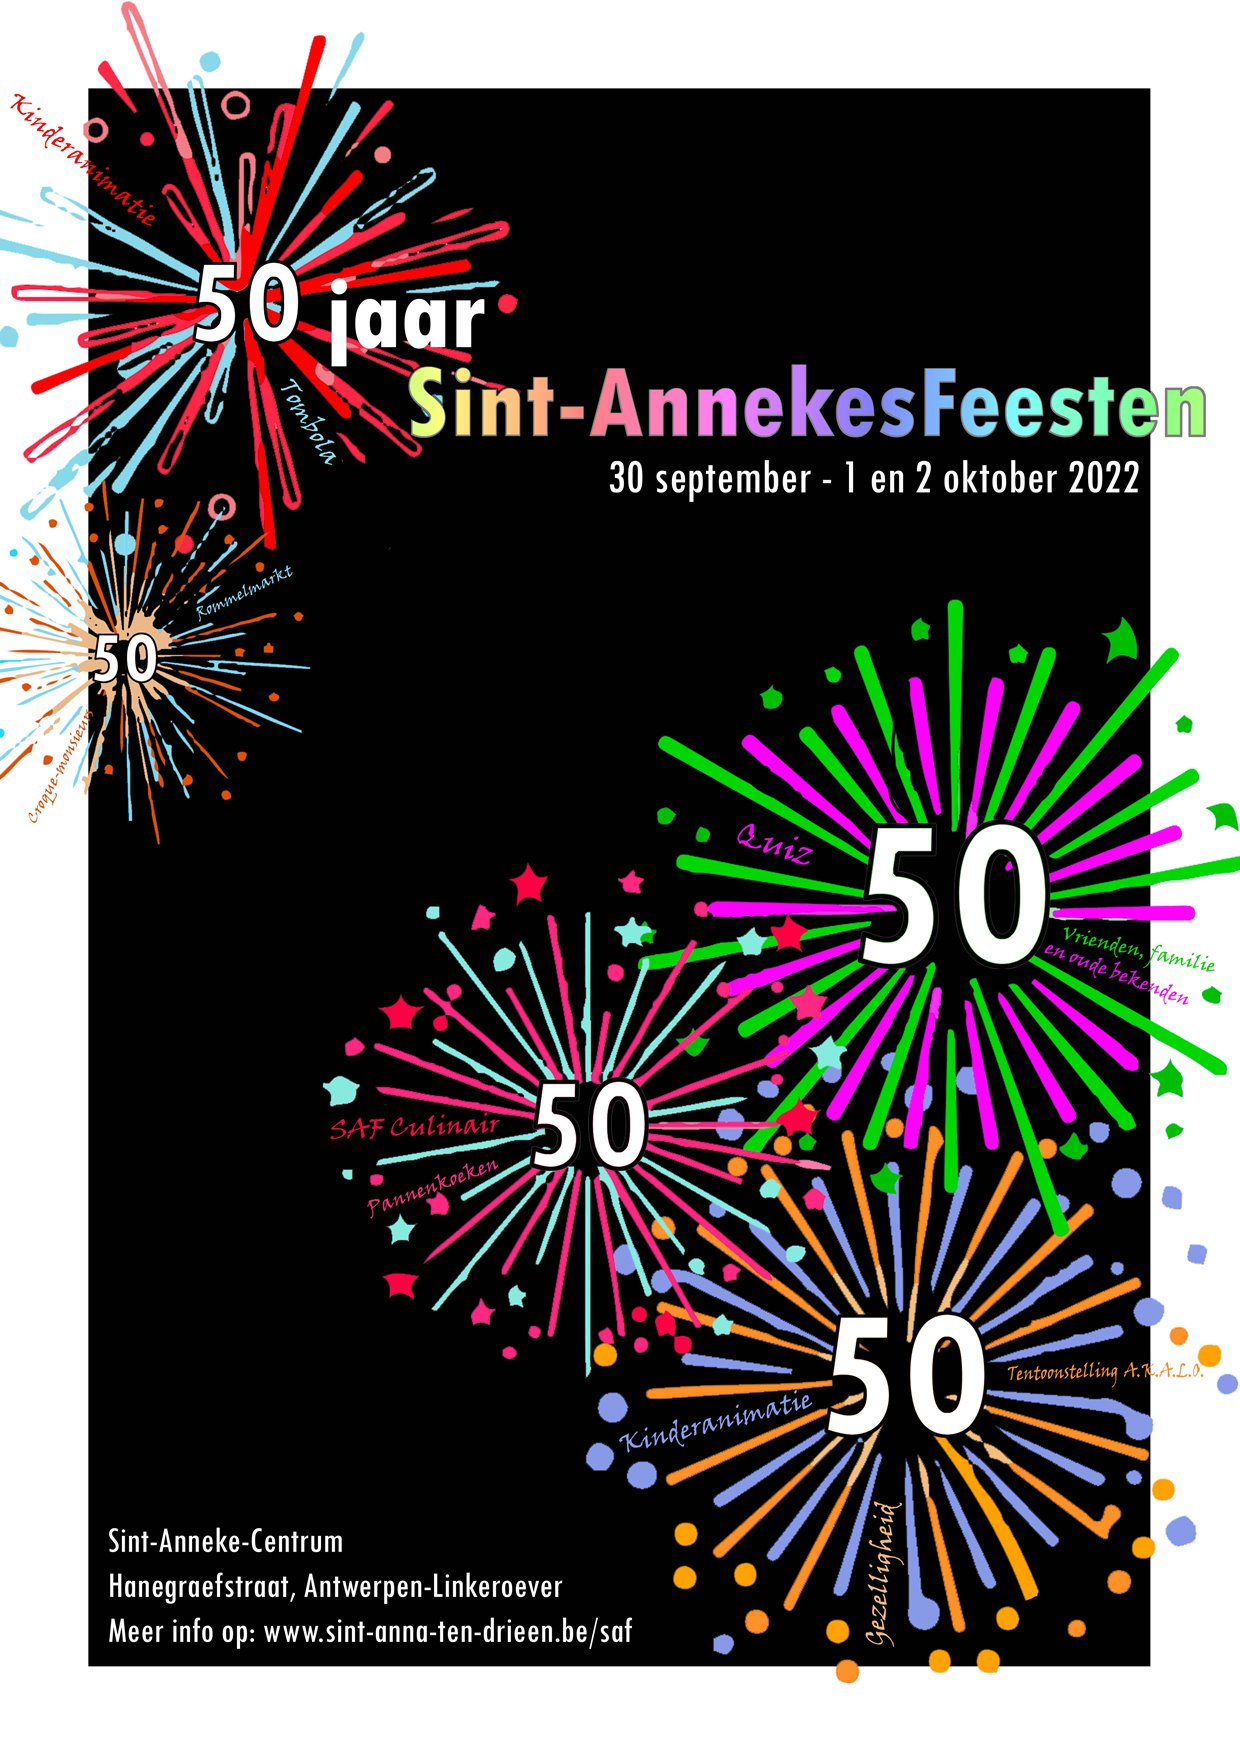 Sint-Annekesfeesten 2022 - 50 jaar SAF - Vrijdag 30 september, zaterdag 1 en zondag 2 oktober 2022